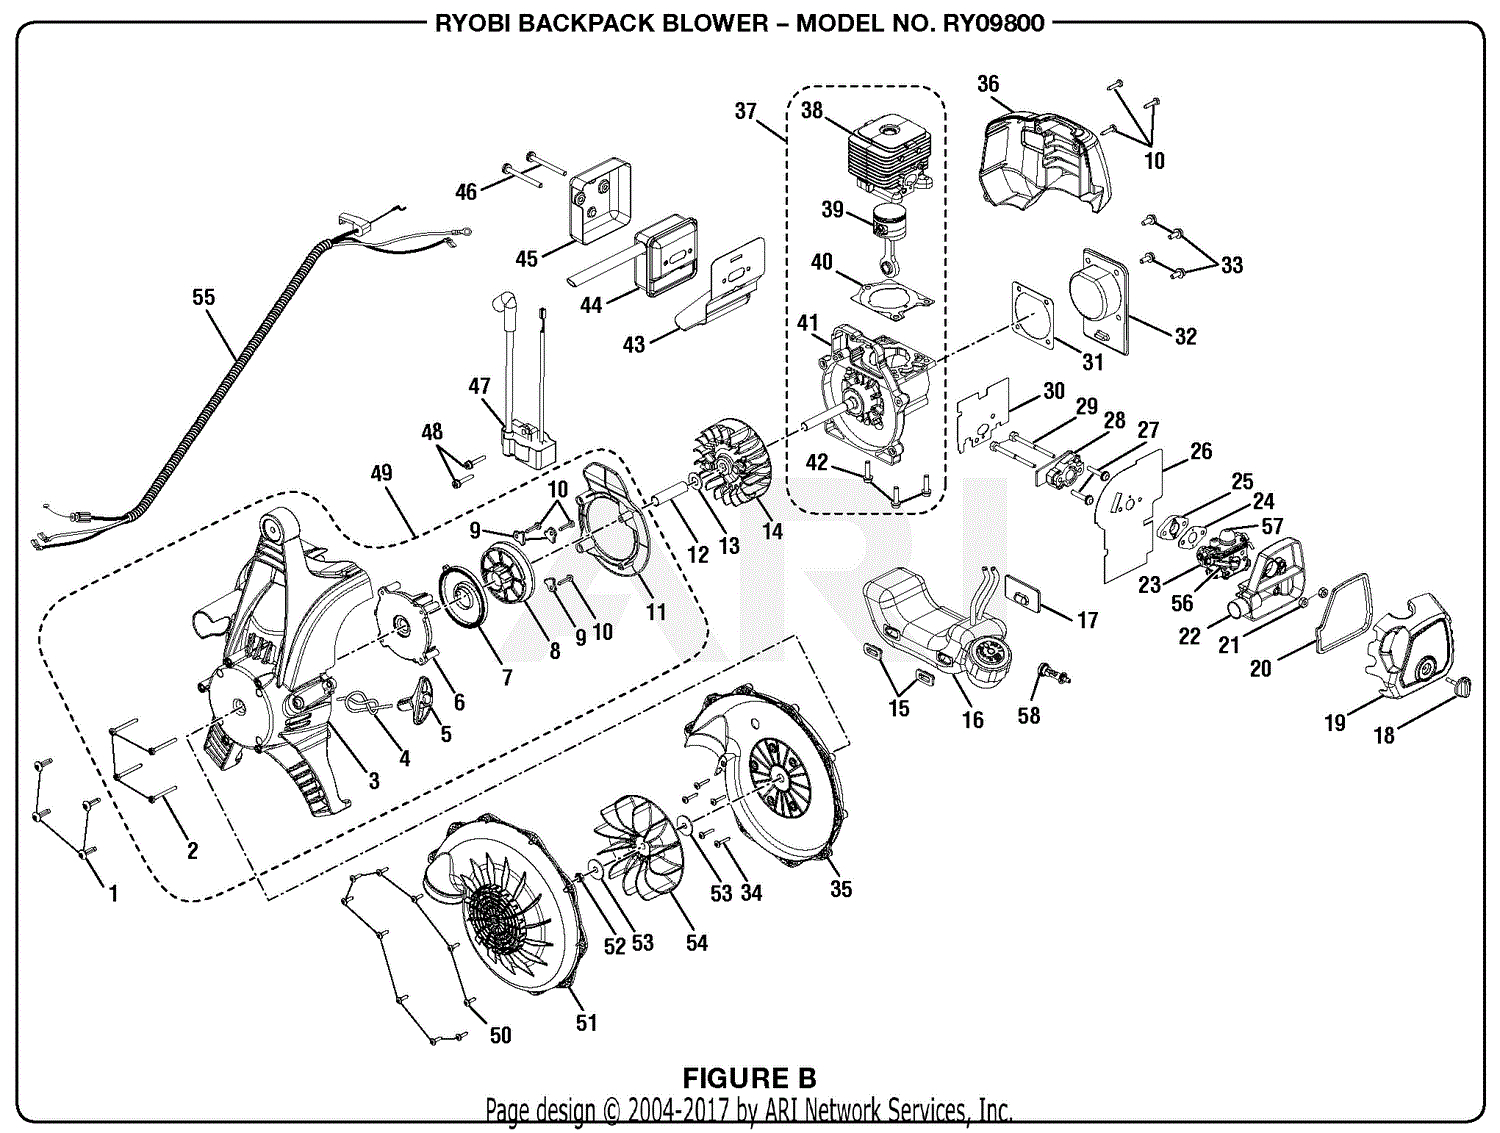 Homelite Leaf Blower Parts Diagram - Free Wiring Diagram